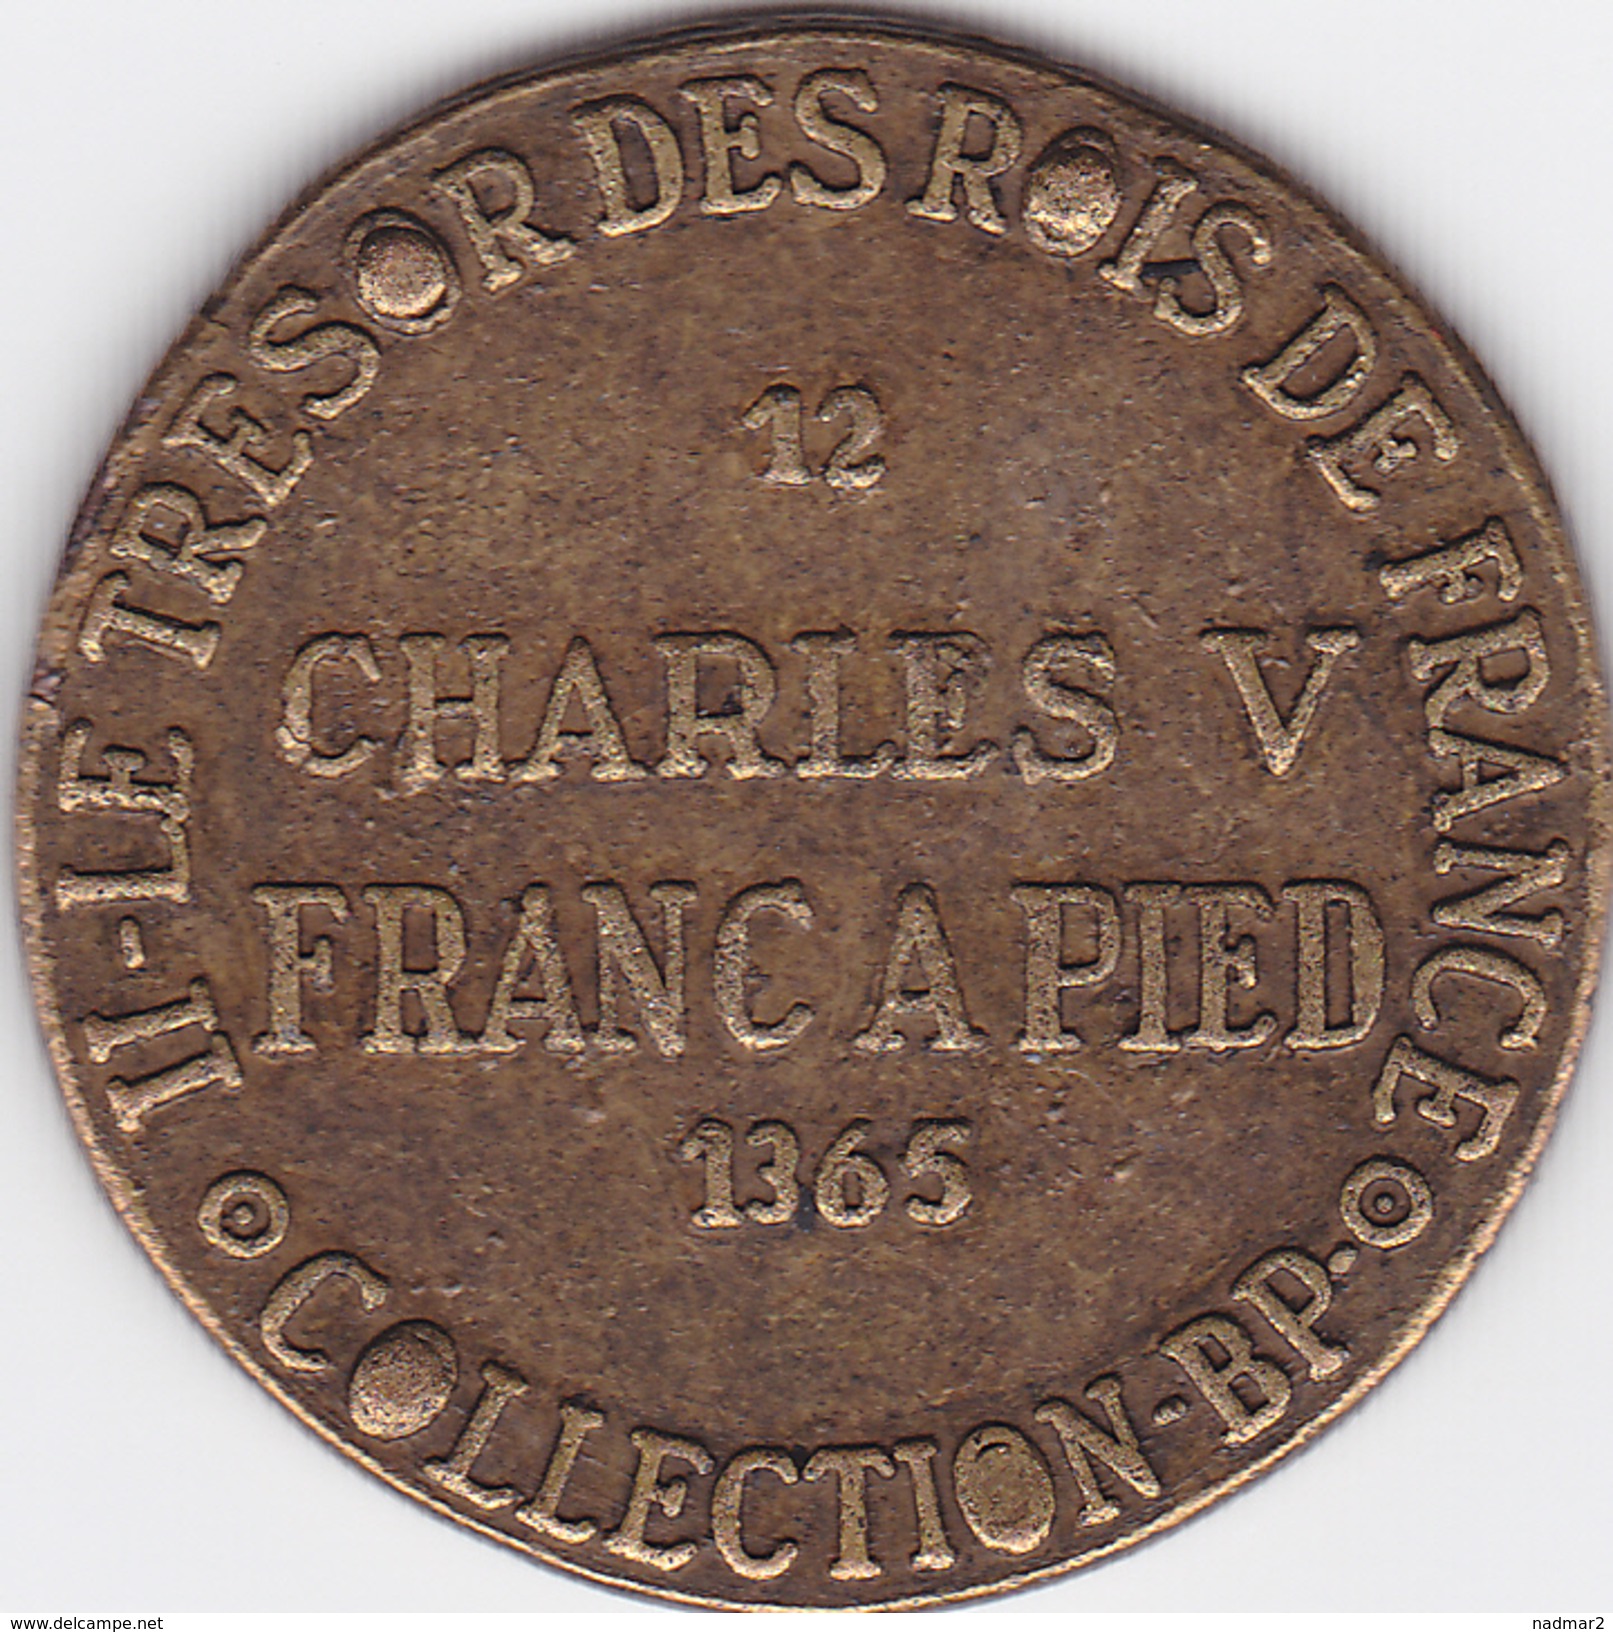 Jeton CHARLES V Franc à Pied 1365 Collection BP Trésor Des Rois De France  5 G TBE Publicité Pièce Monnaie - Monarchia / Nobiltà